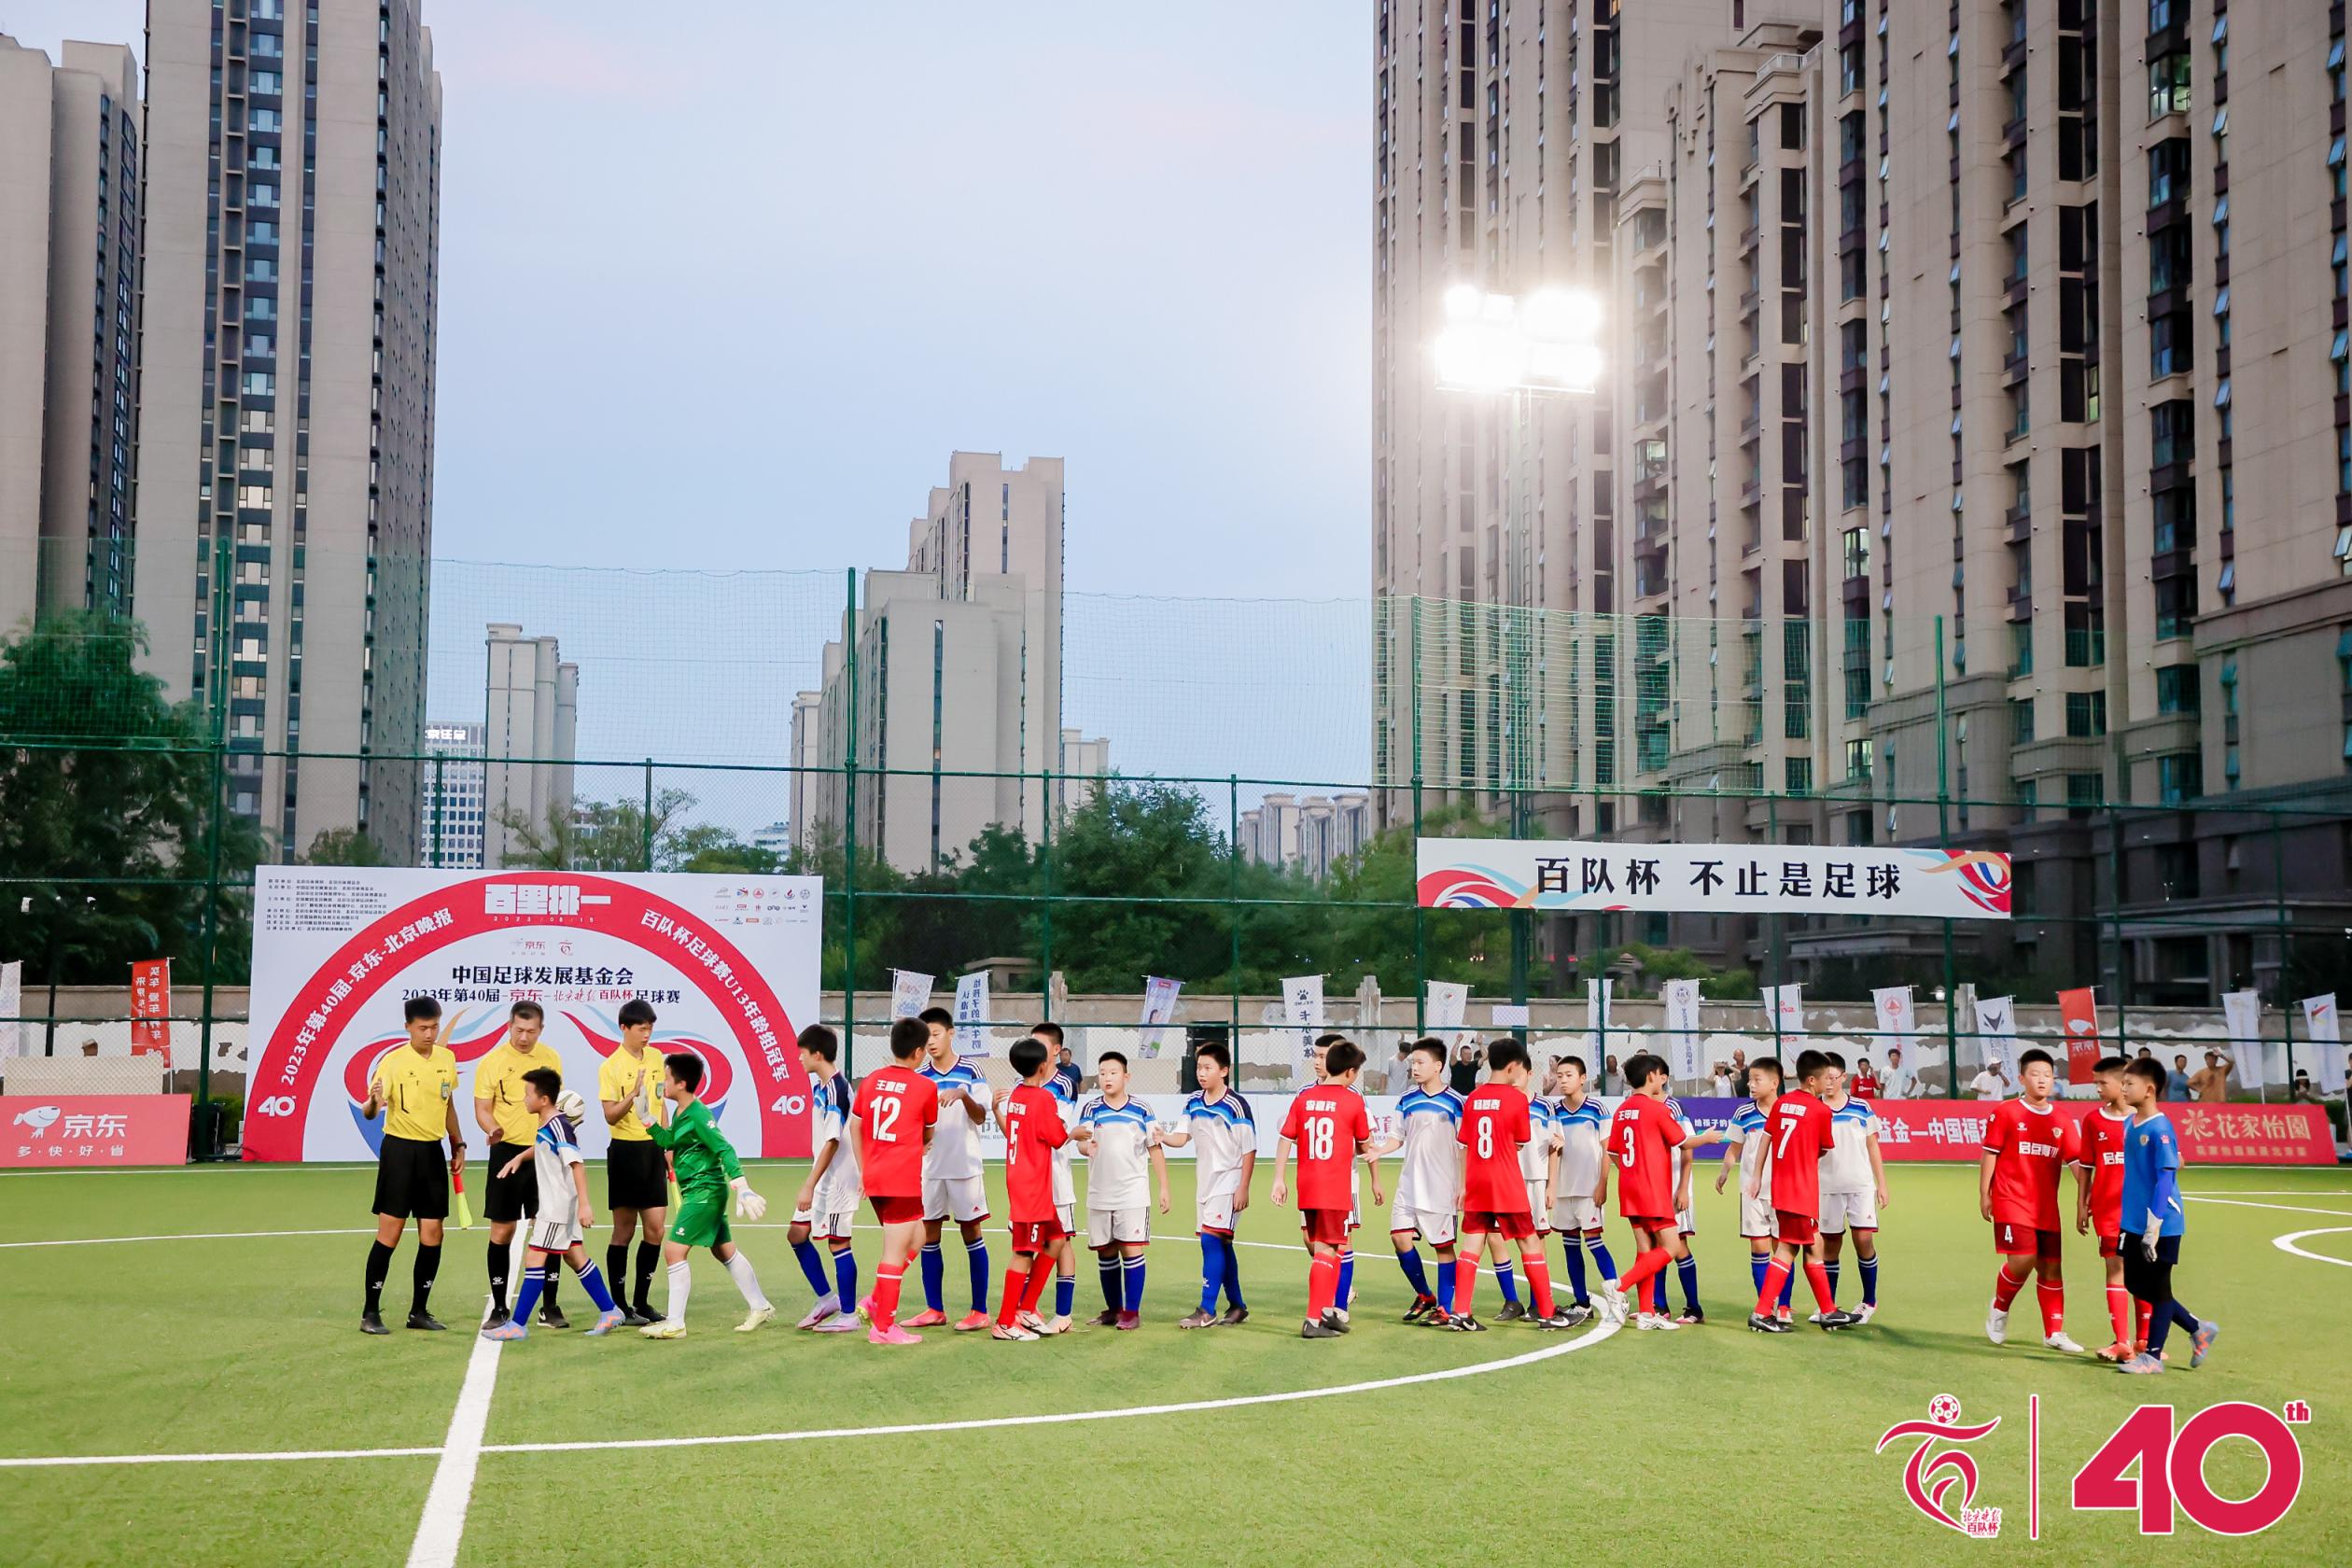 北京足协主席刘军表示：“百队杯40年来获得了无数人的赞扬